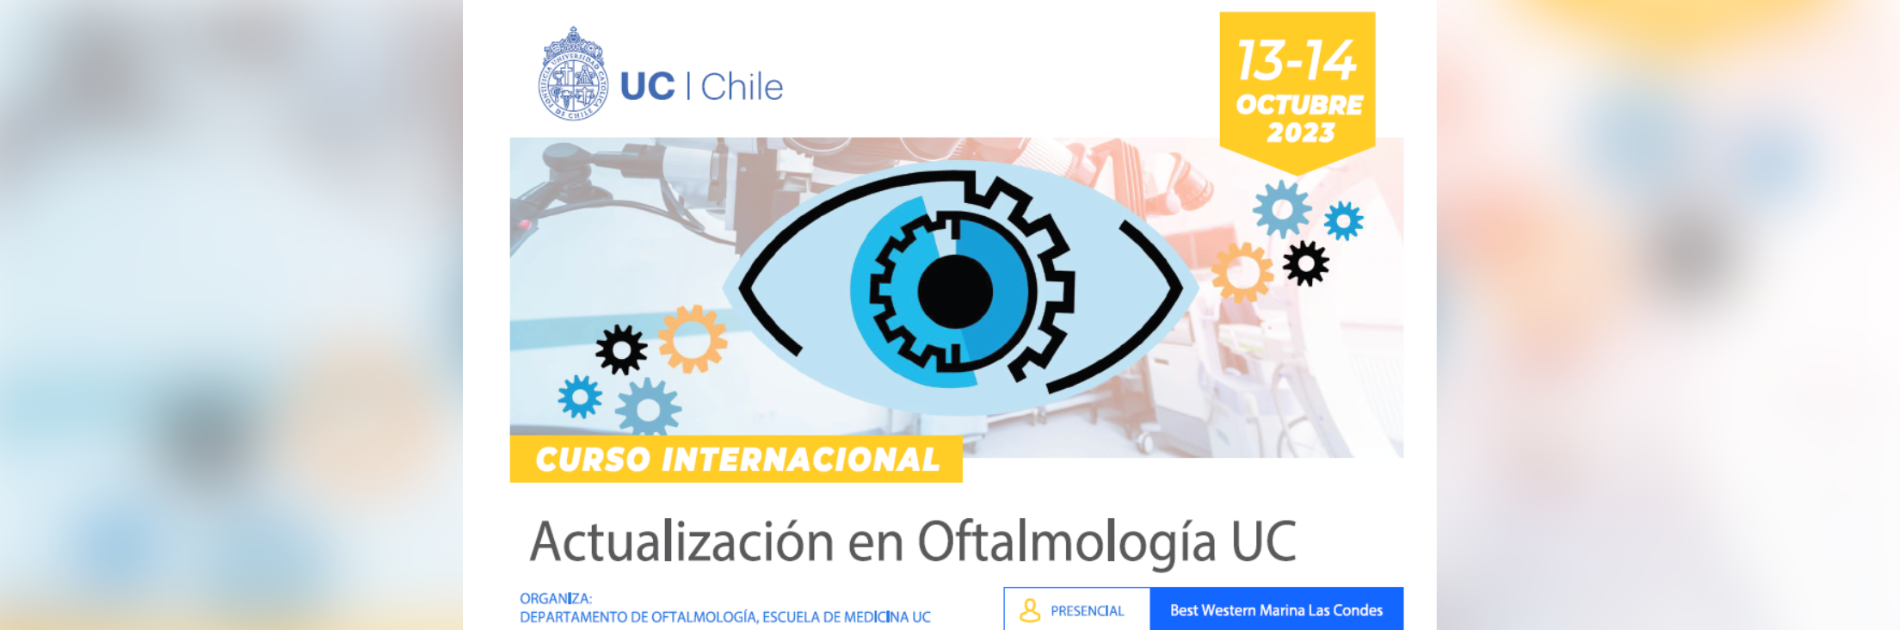 Curso Internacional Actualización en Oftalmología UC